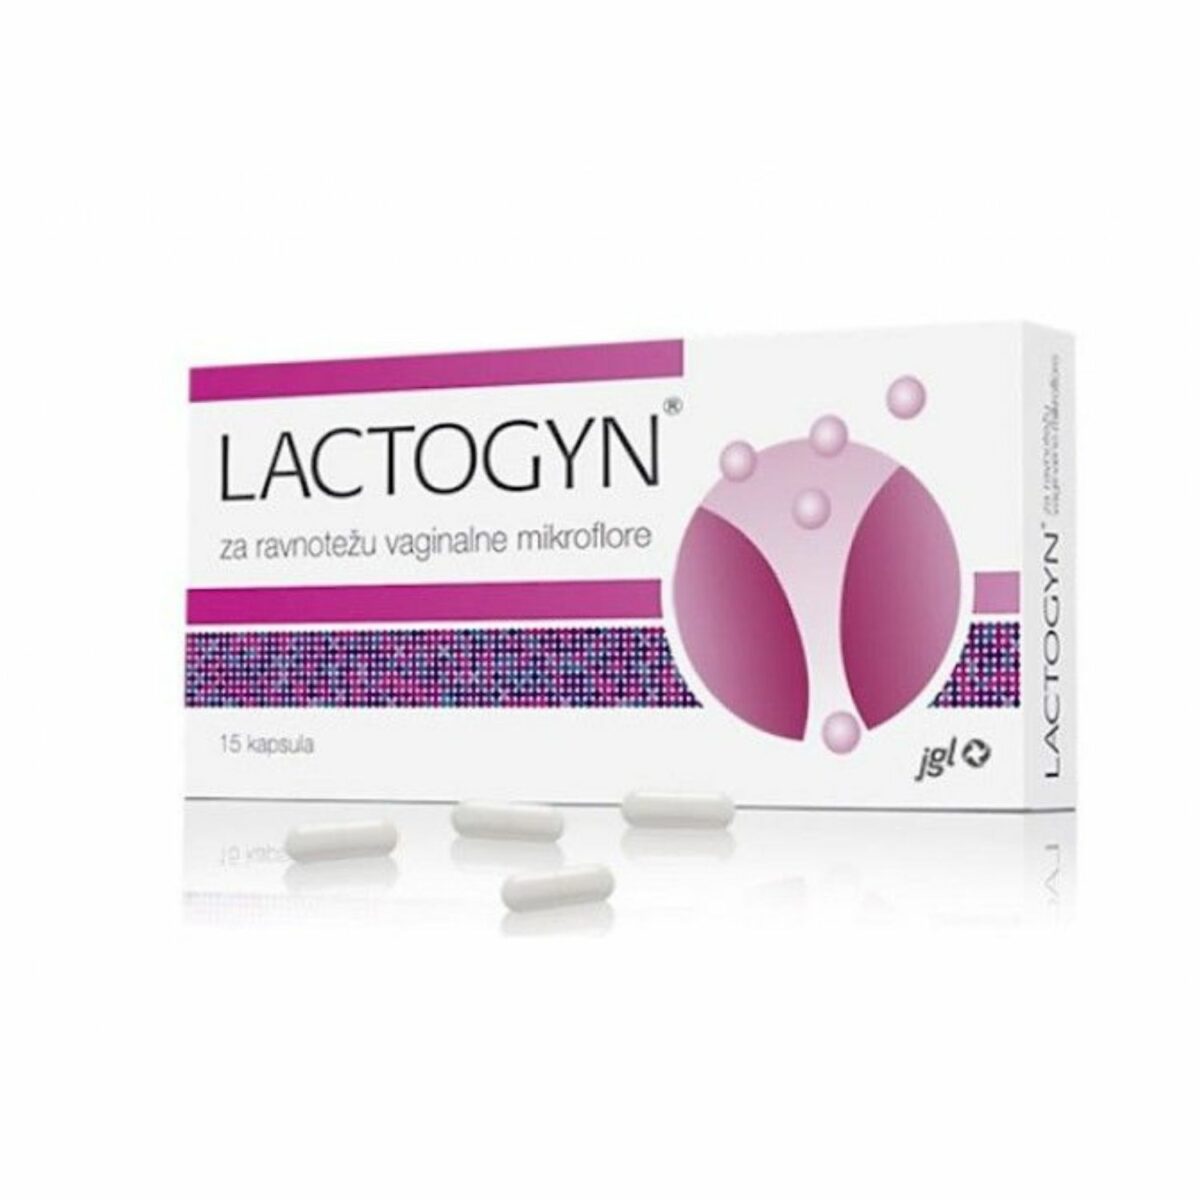 Lactogyn 15 kapsula